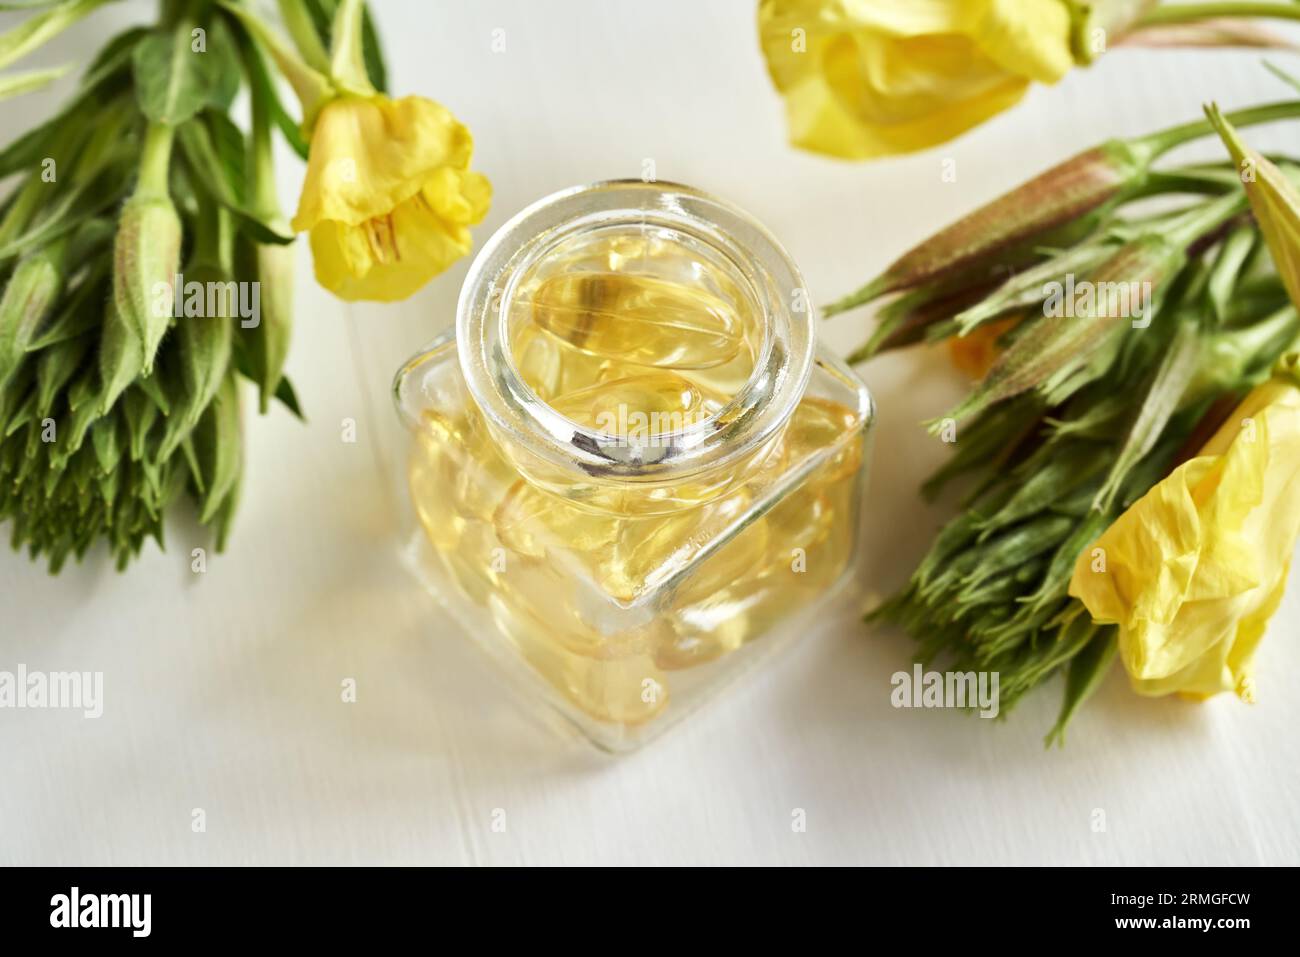 Nachtkerzen-Kapseln in einer Glasflasche - gesundes Nahrungsergänzungsmittel Stockfoto